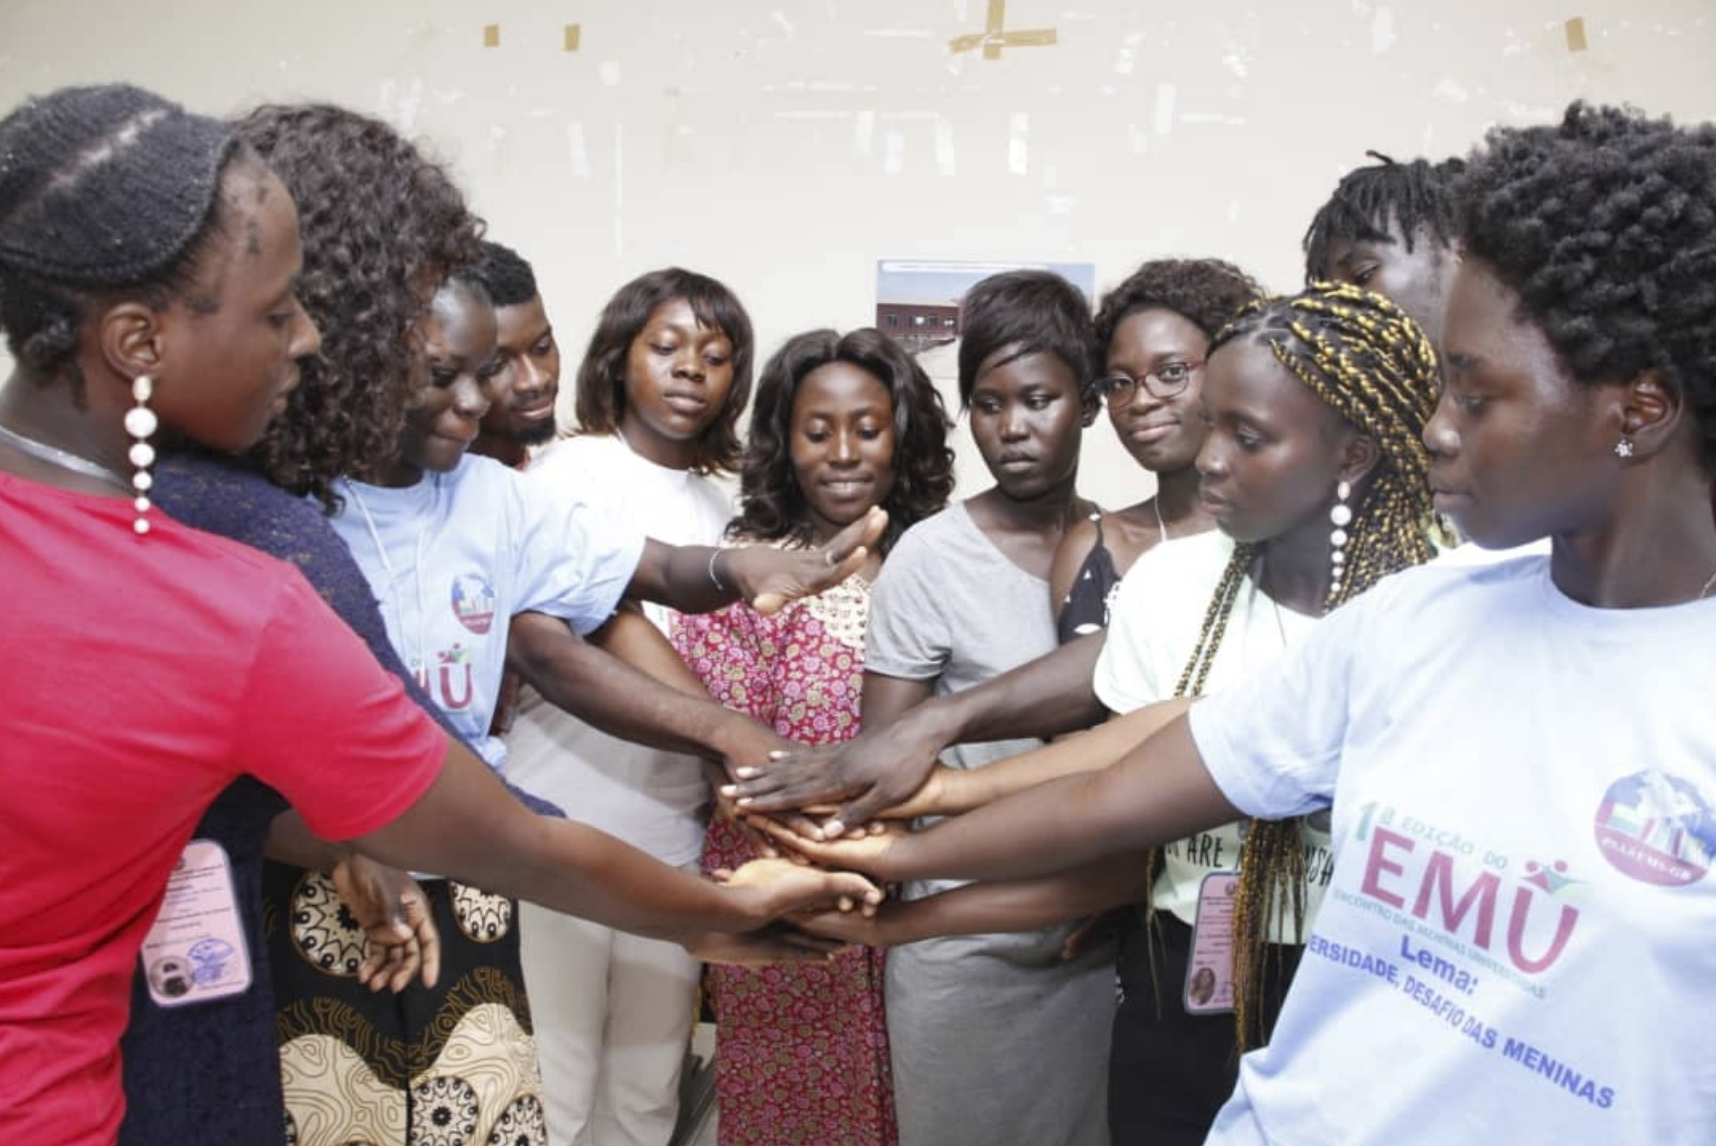 primeira edição do encontro de meninas universitárias "EMU", baseado no projeto "badjudas pudi". 